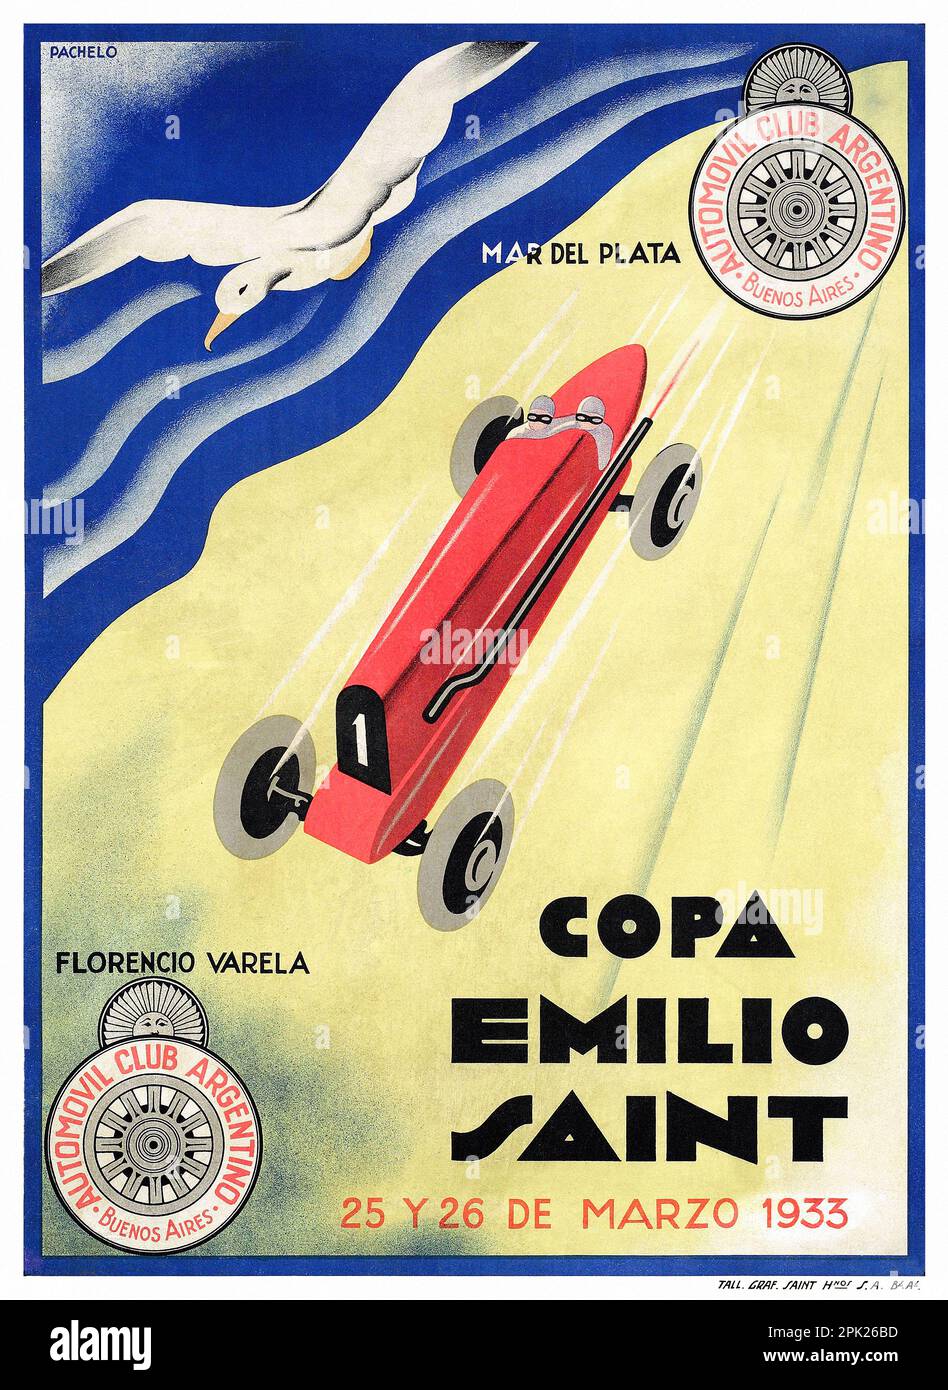 Copa Emilio Saint von Pachelo (Datum unbekannt). Poster wurde 1933 in Argentinien veröffentlicht. Stockfoto